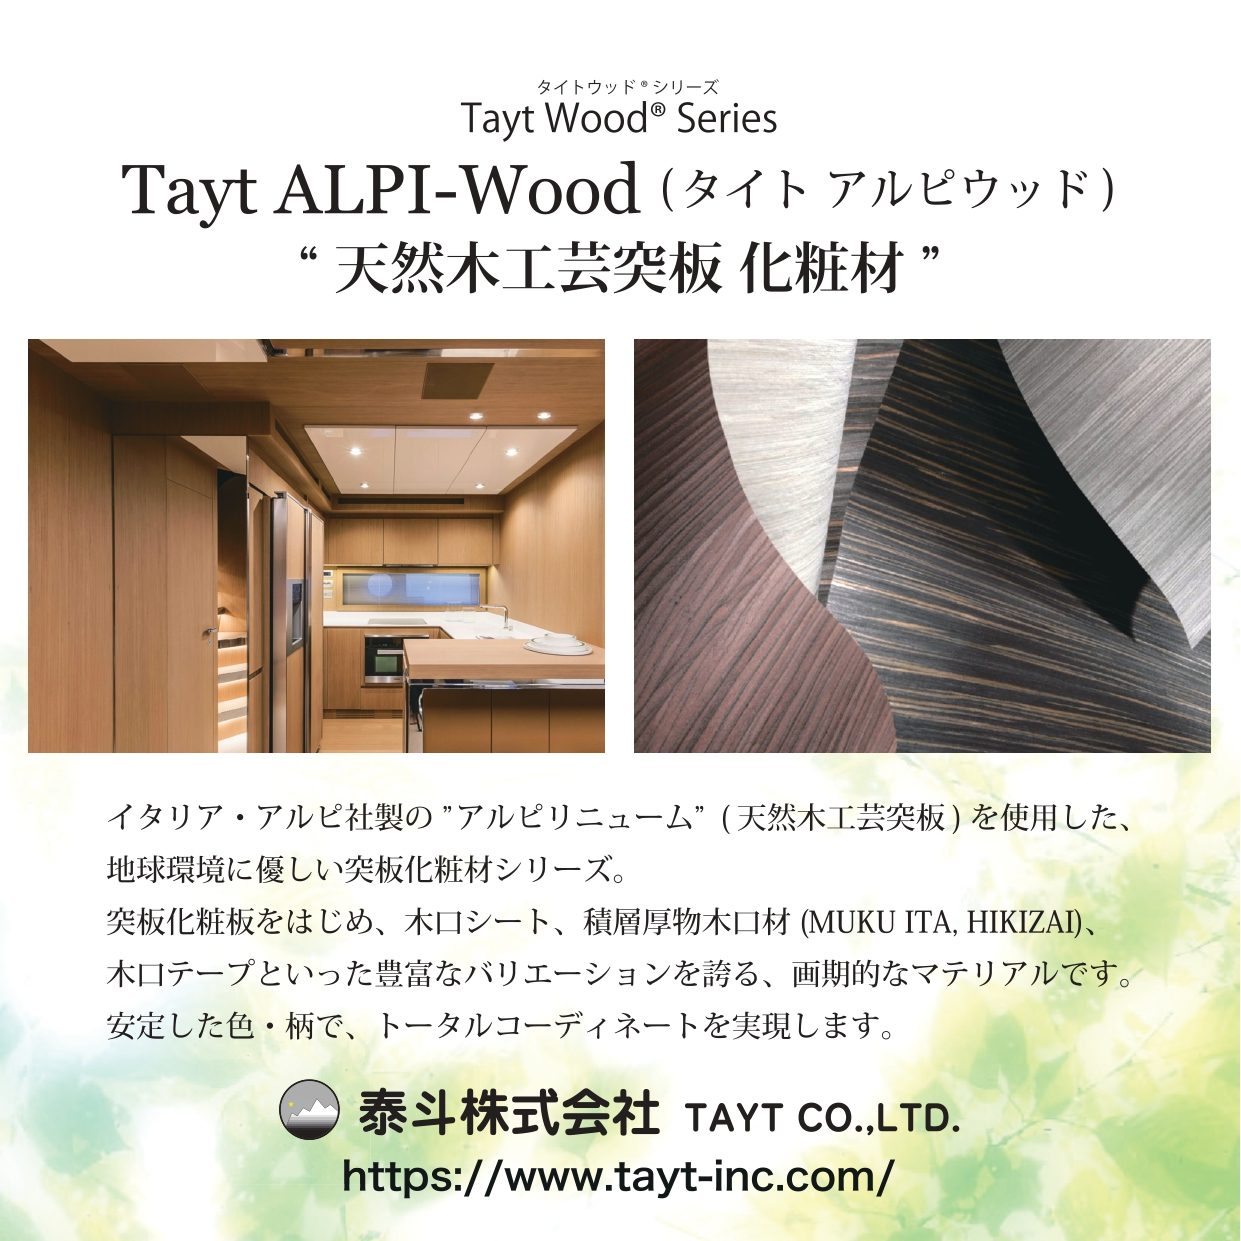 T-4053-0 天然木工芸突板化粧板 タイト アルピウッド ローズウッド柾 4.0mm×3尺×8尺 クリアー